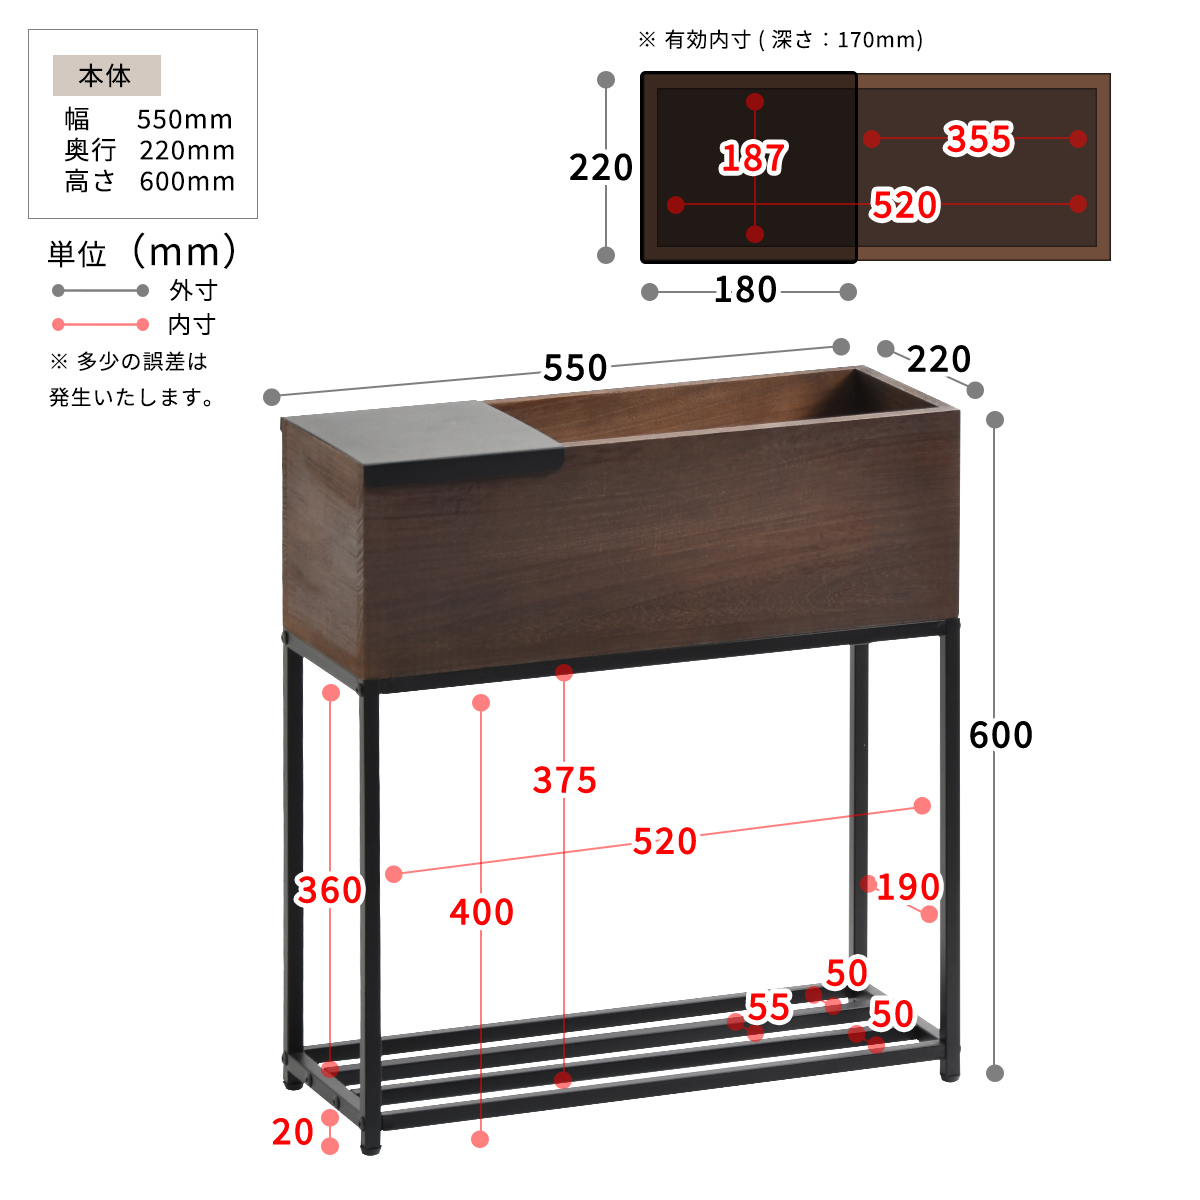 ▽ Lid プランター ボックス テーブル付き 幅55cm onpt0088 ブラウン